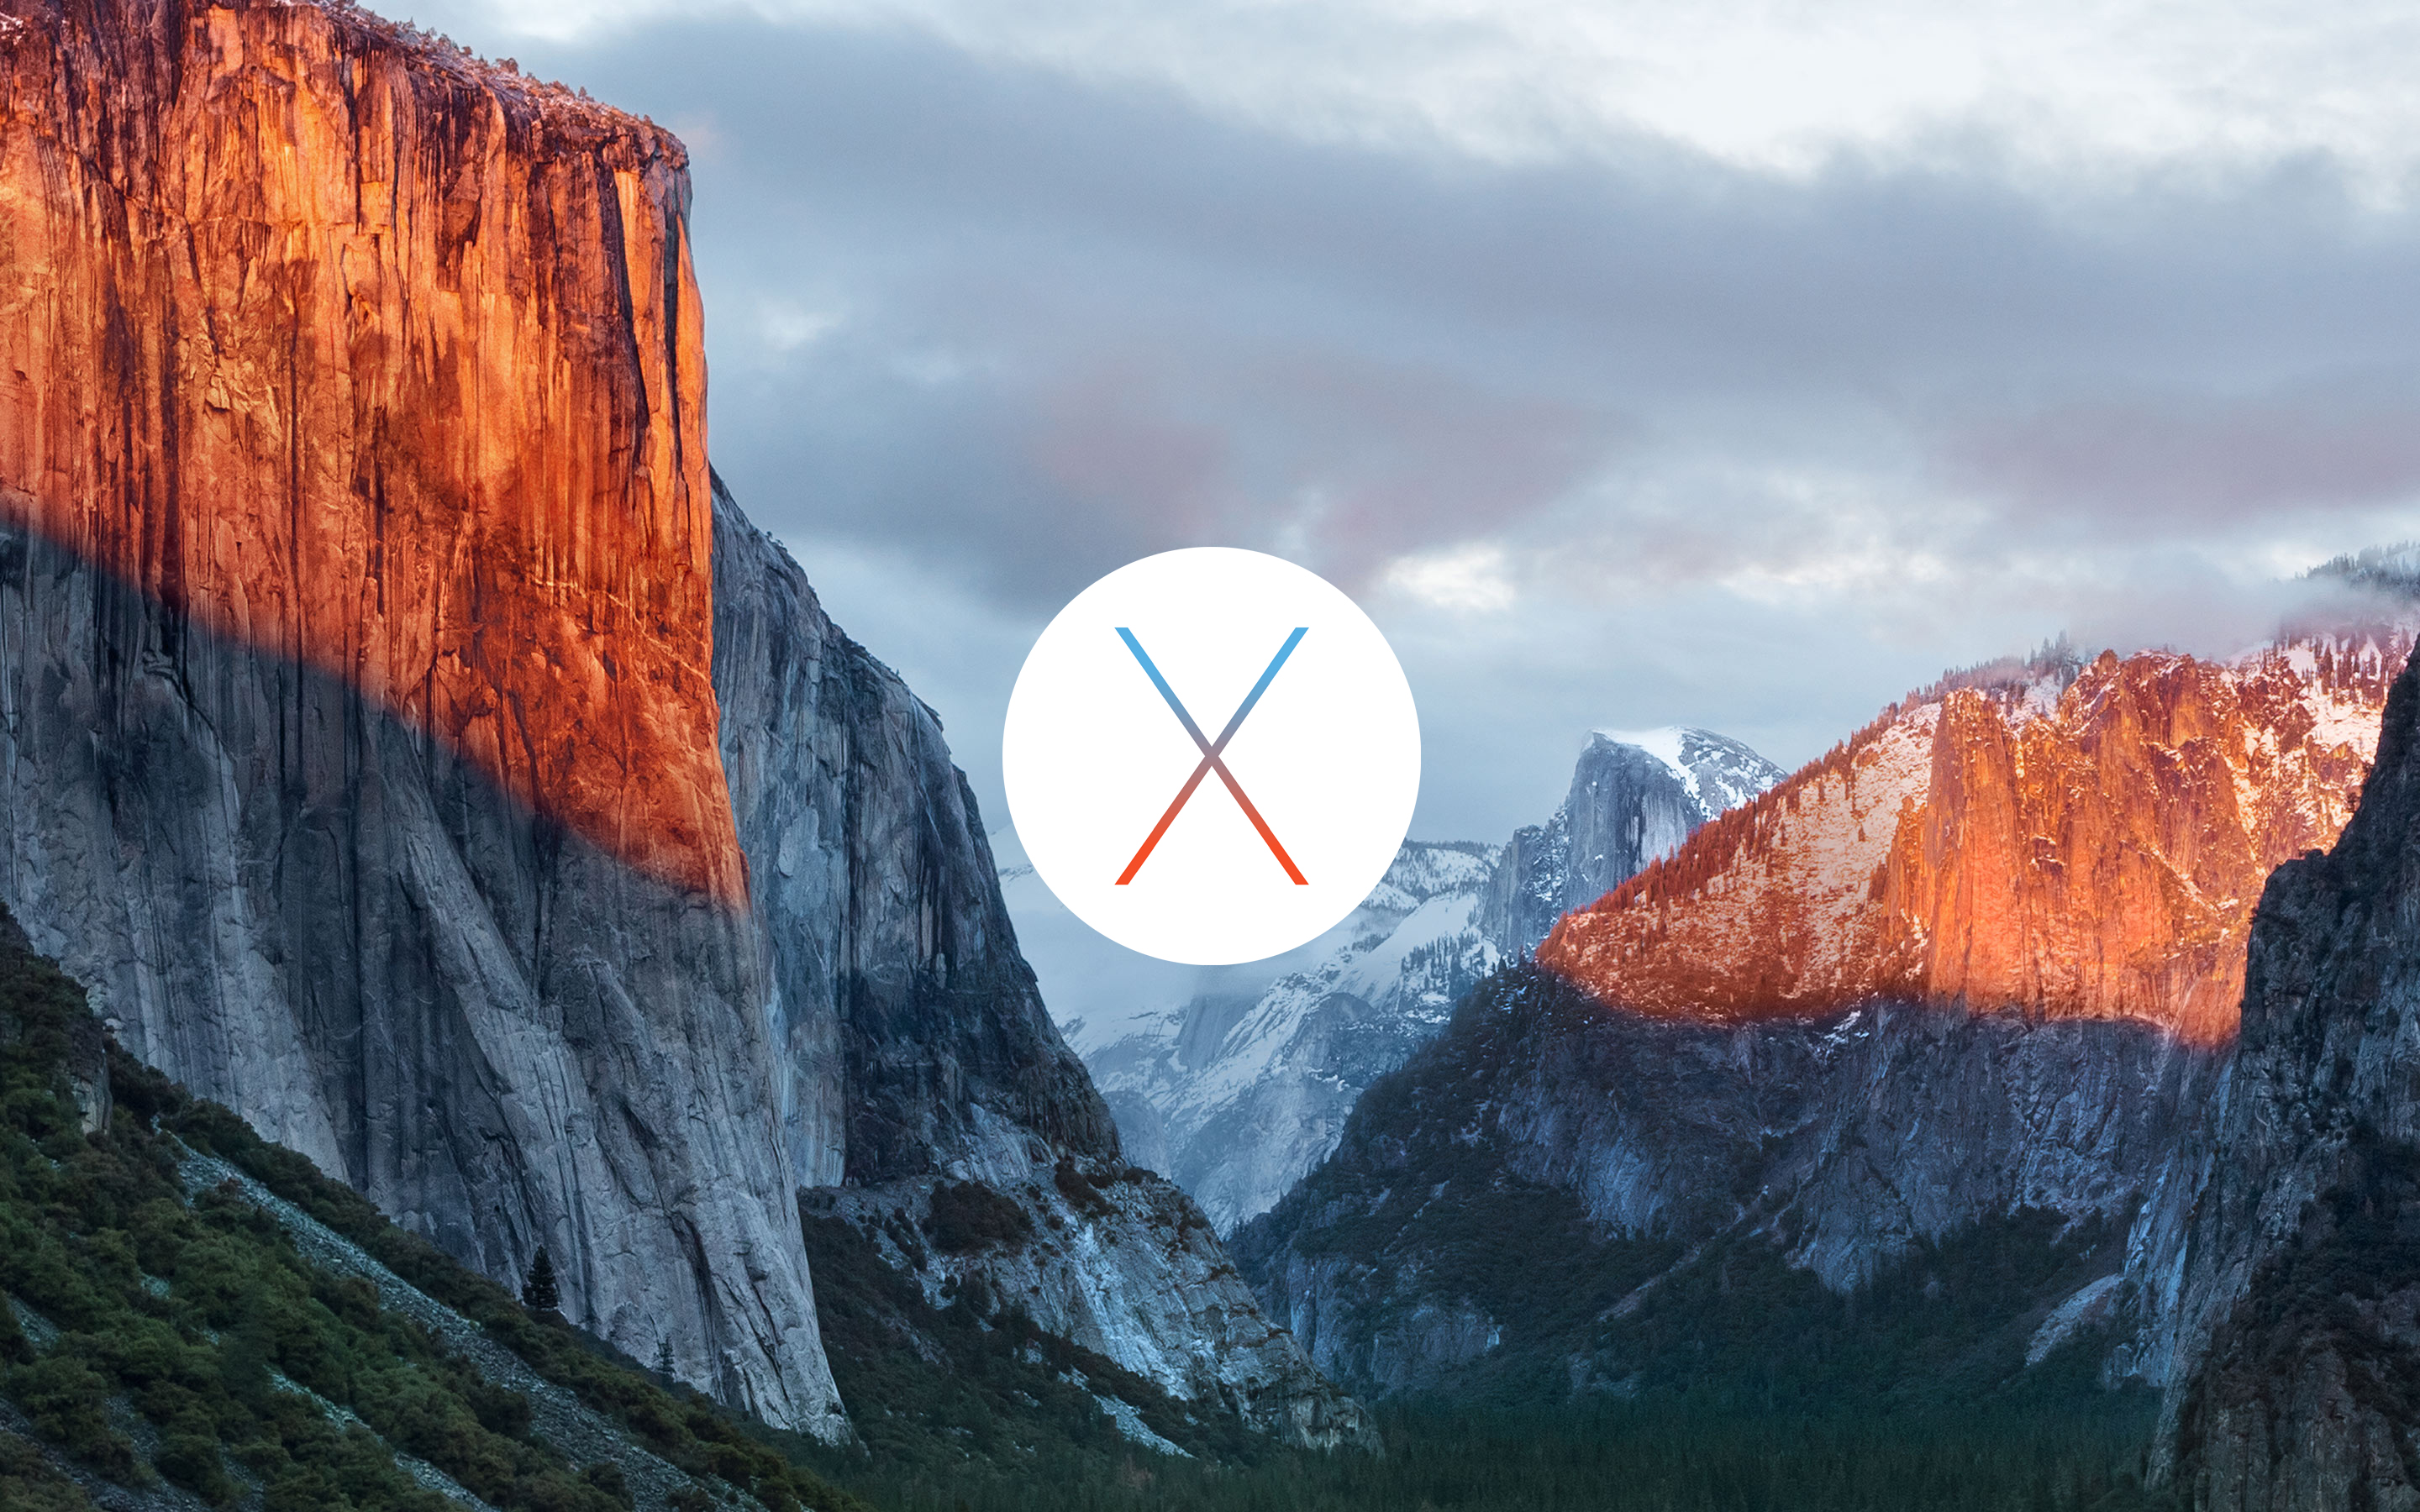 Official Os X El Capitan Wallpaper For iPhone iPad Desktop The